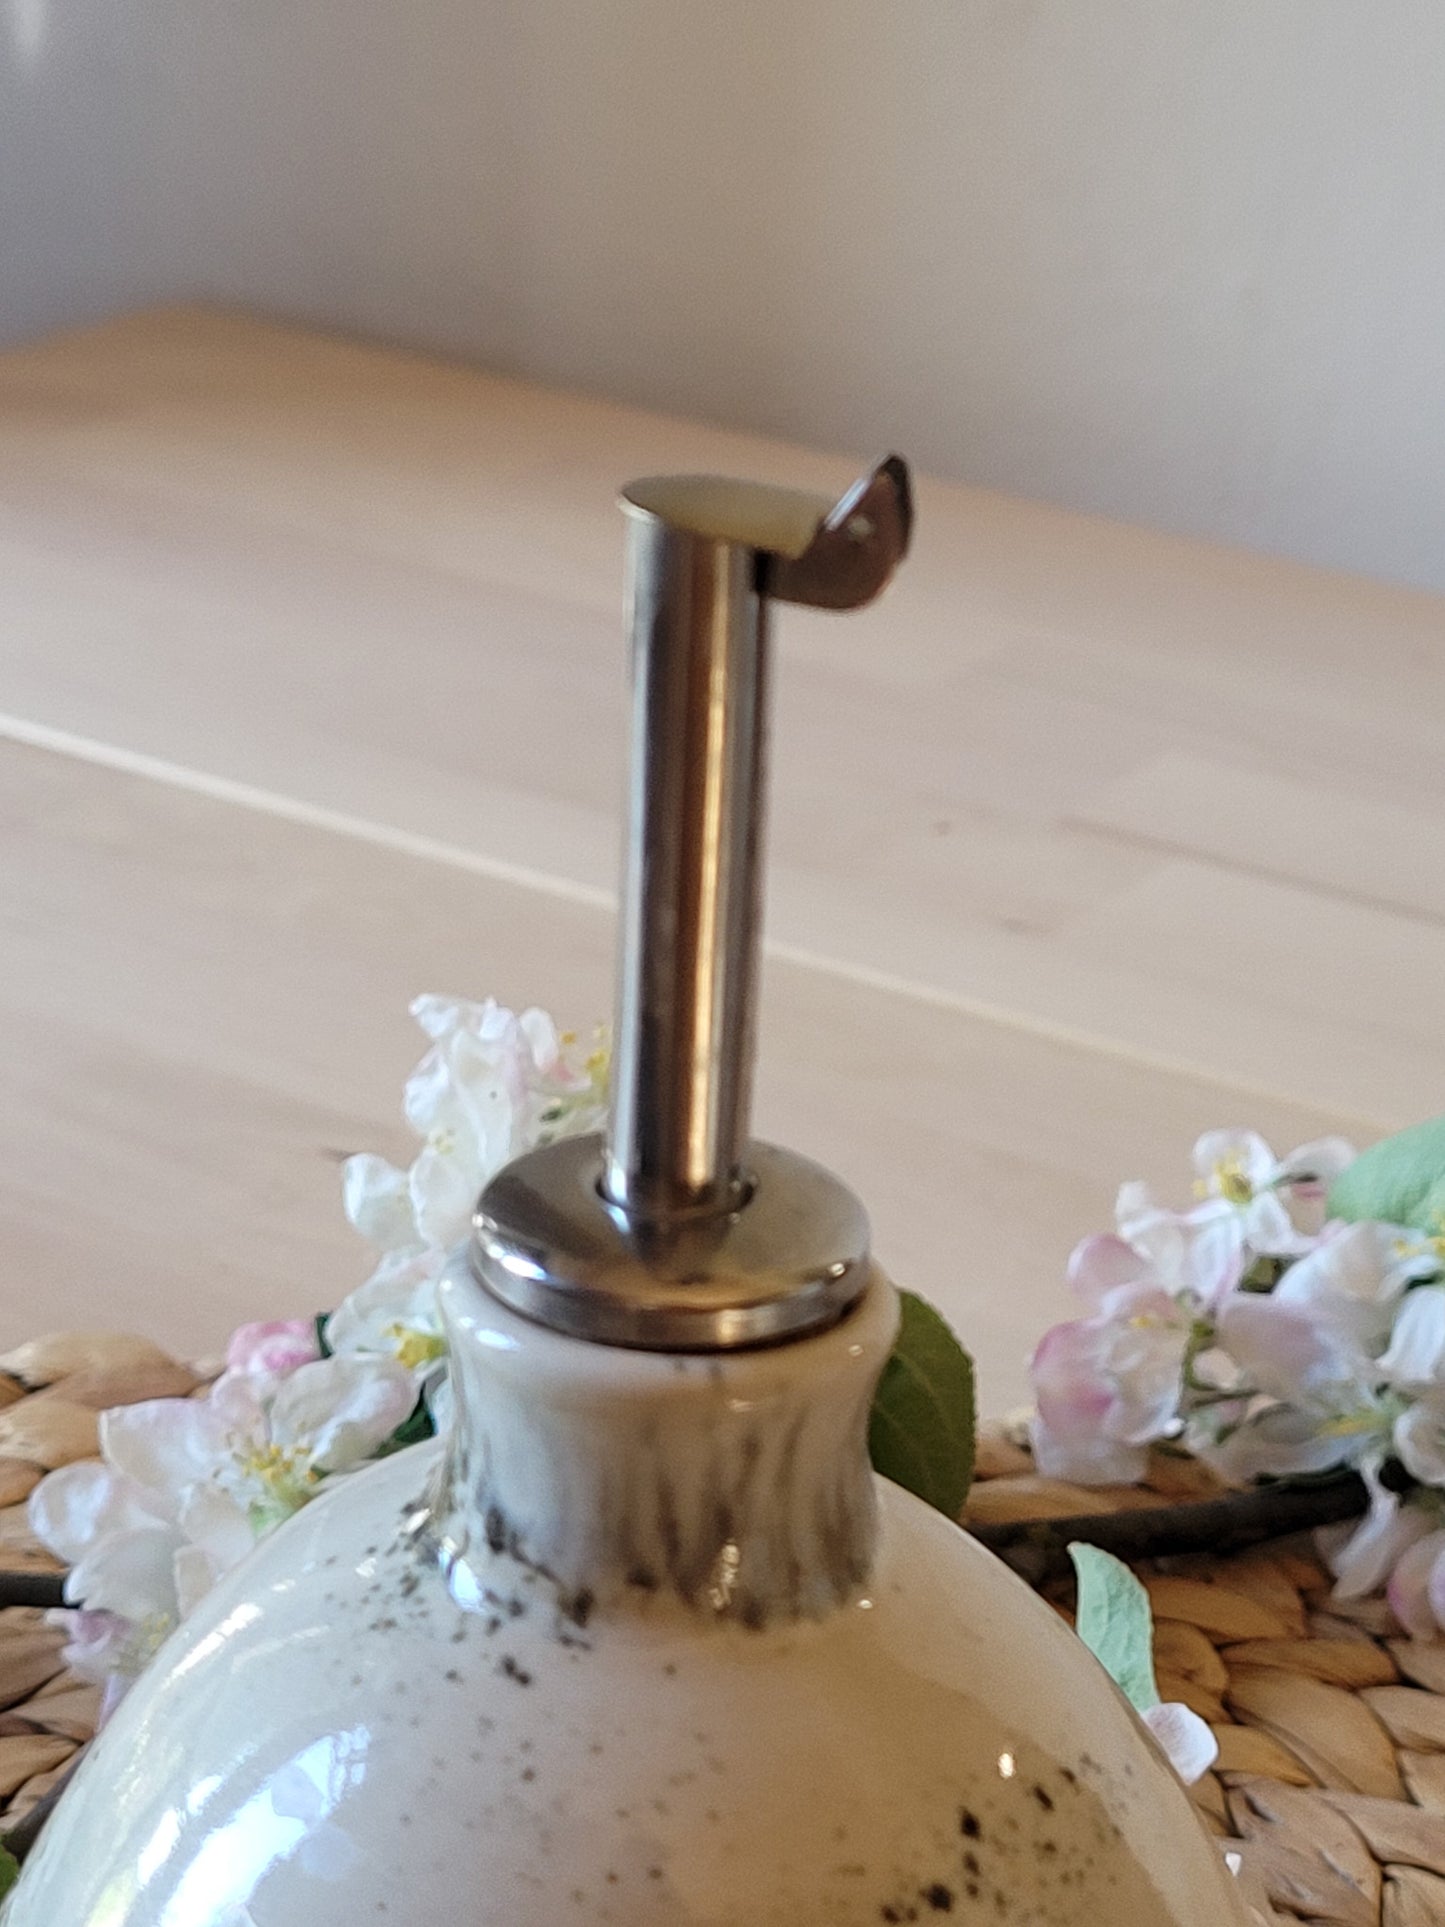 Bouteille d'huile en céramique fabriquée à la main - Une touche durable pour votre comptoir de cuisine